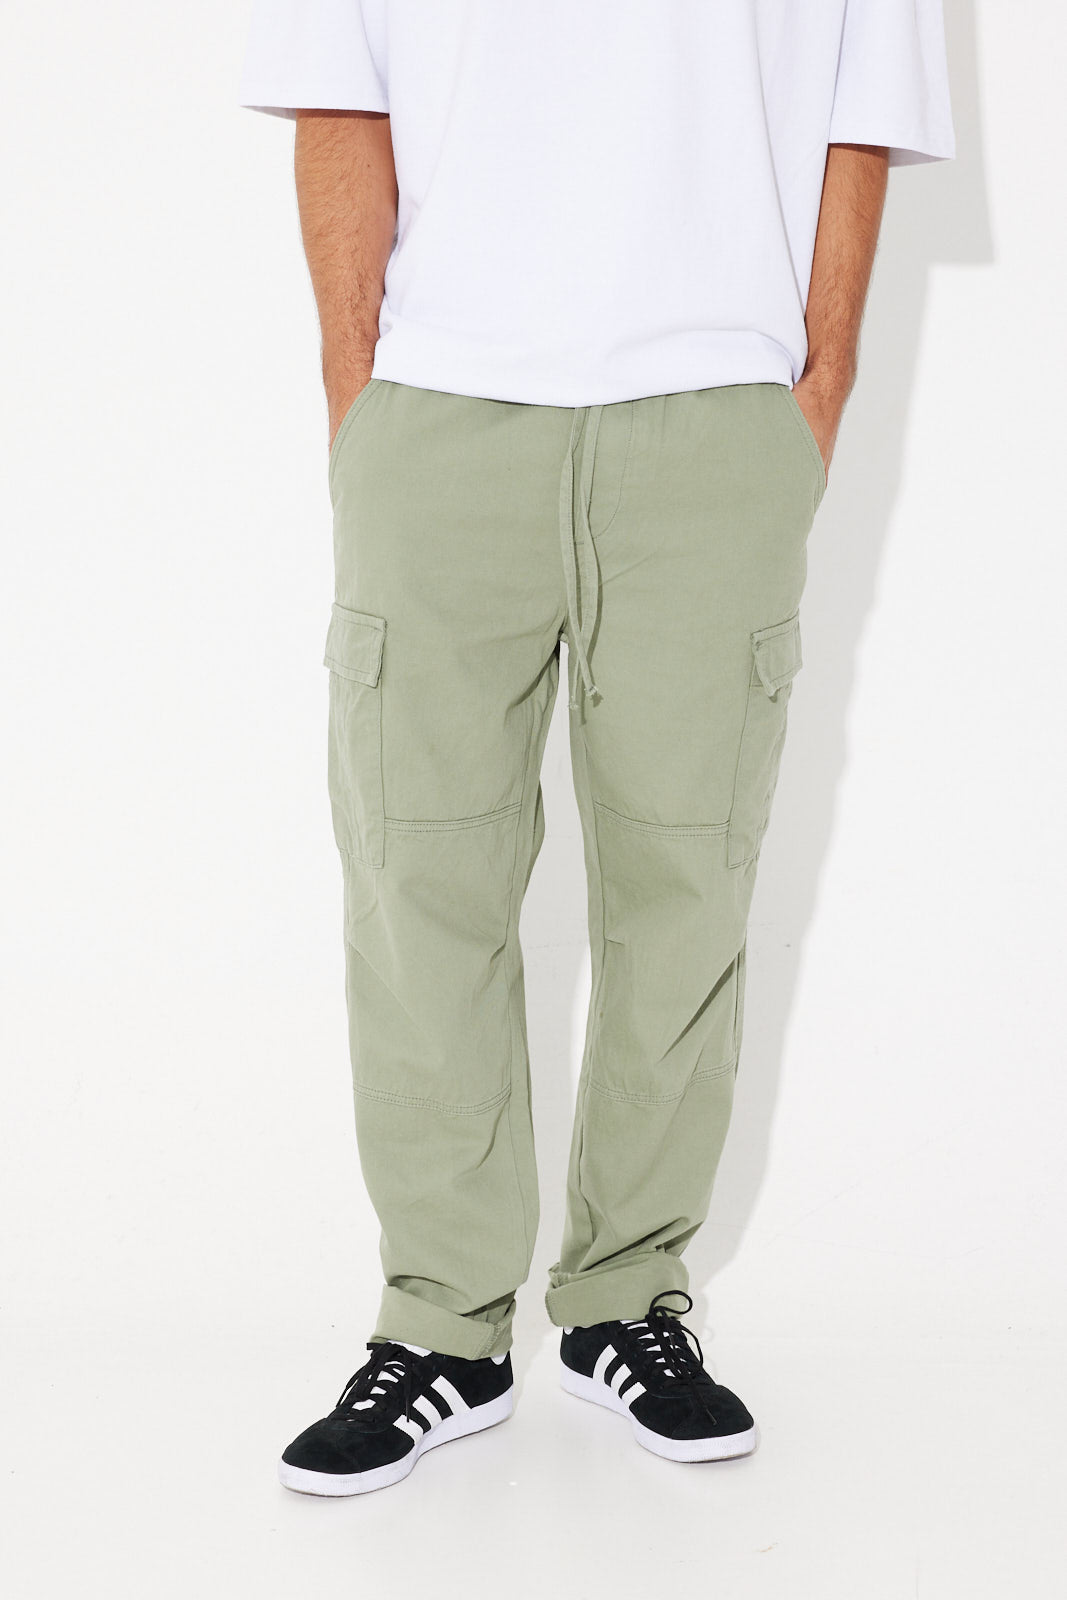 Superdry Organic Cotton Recruit Grip 2.0 Trousers - Mens Sale Mens Pants